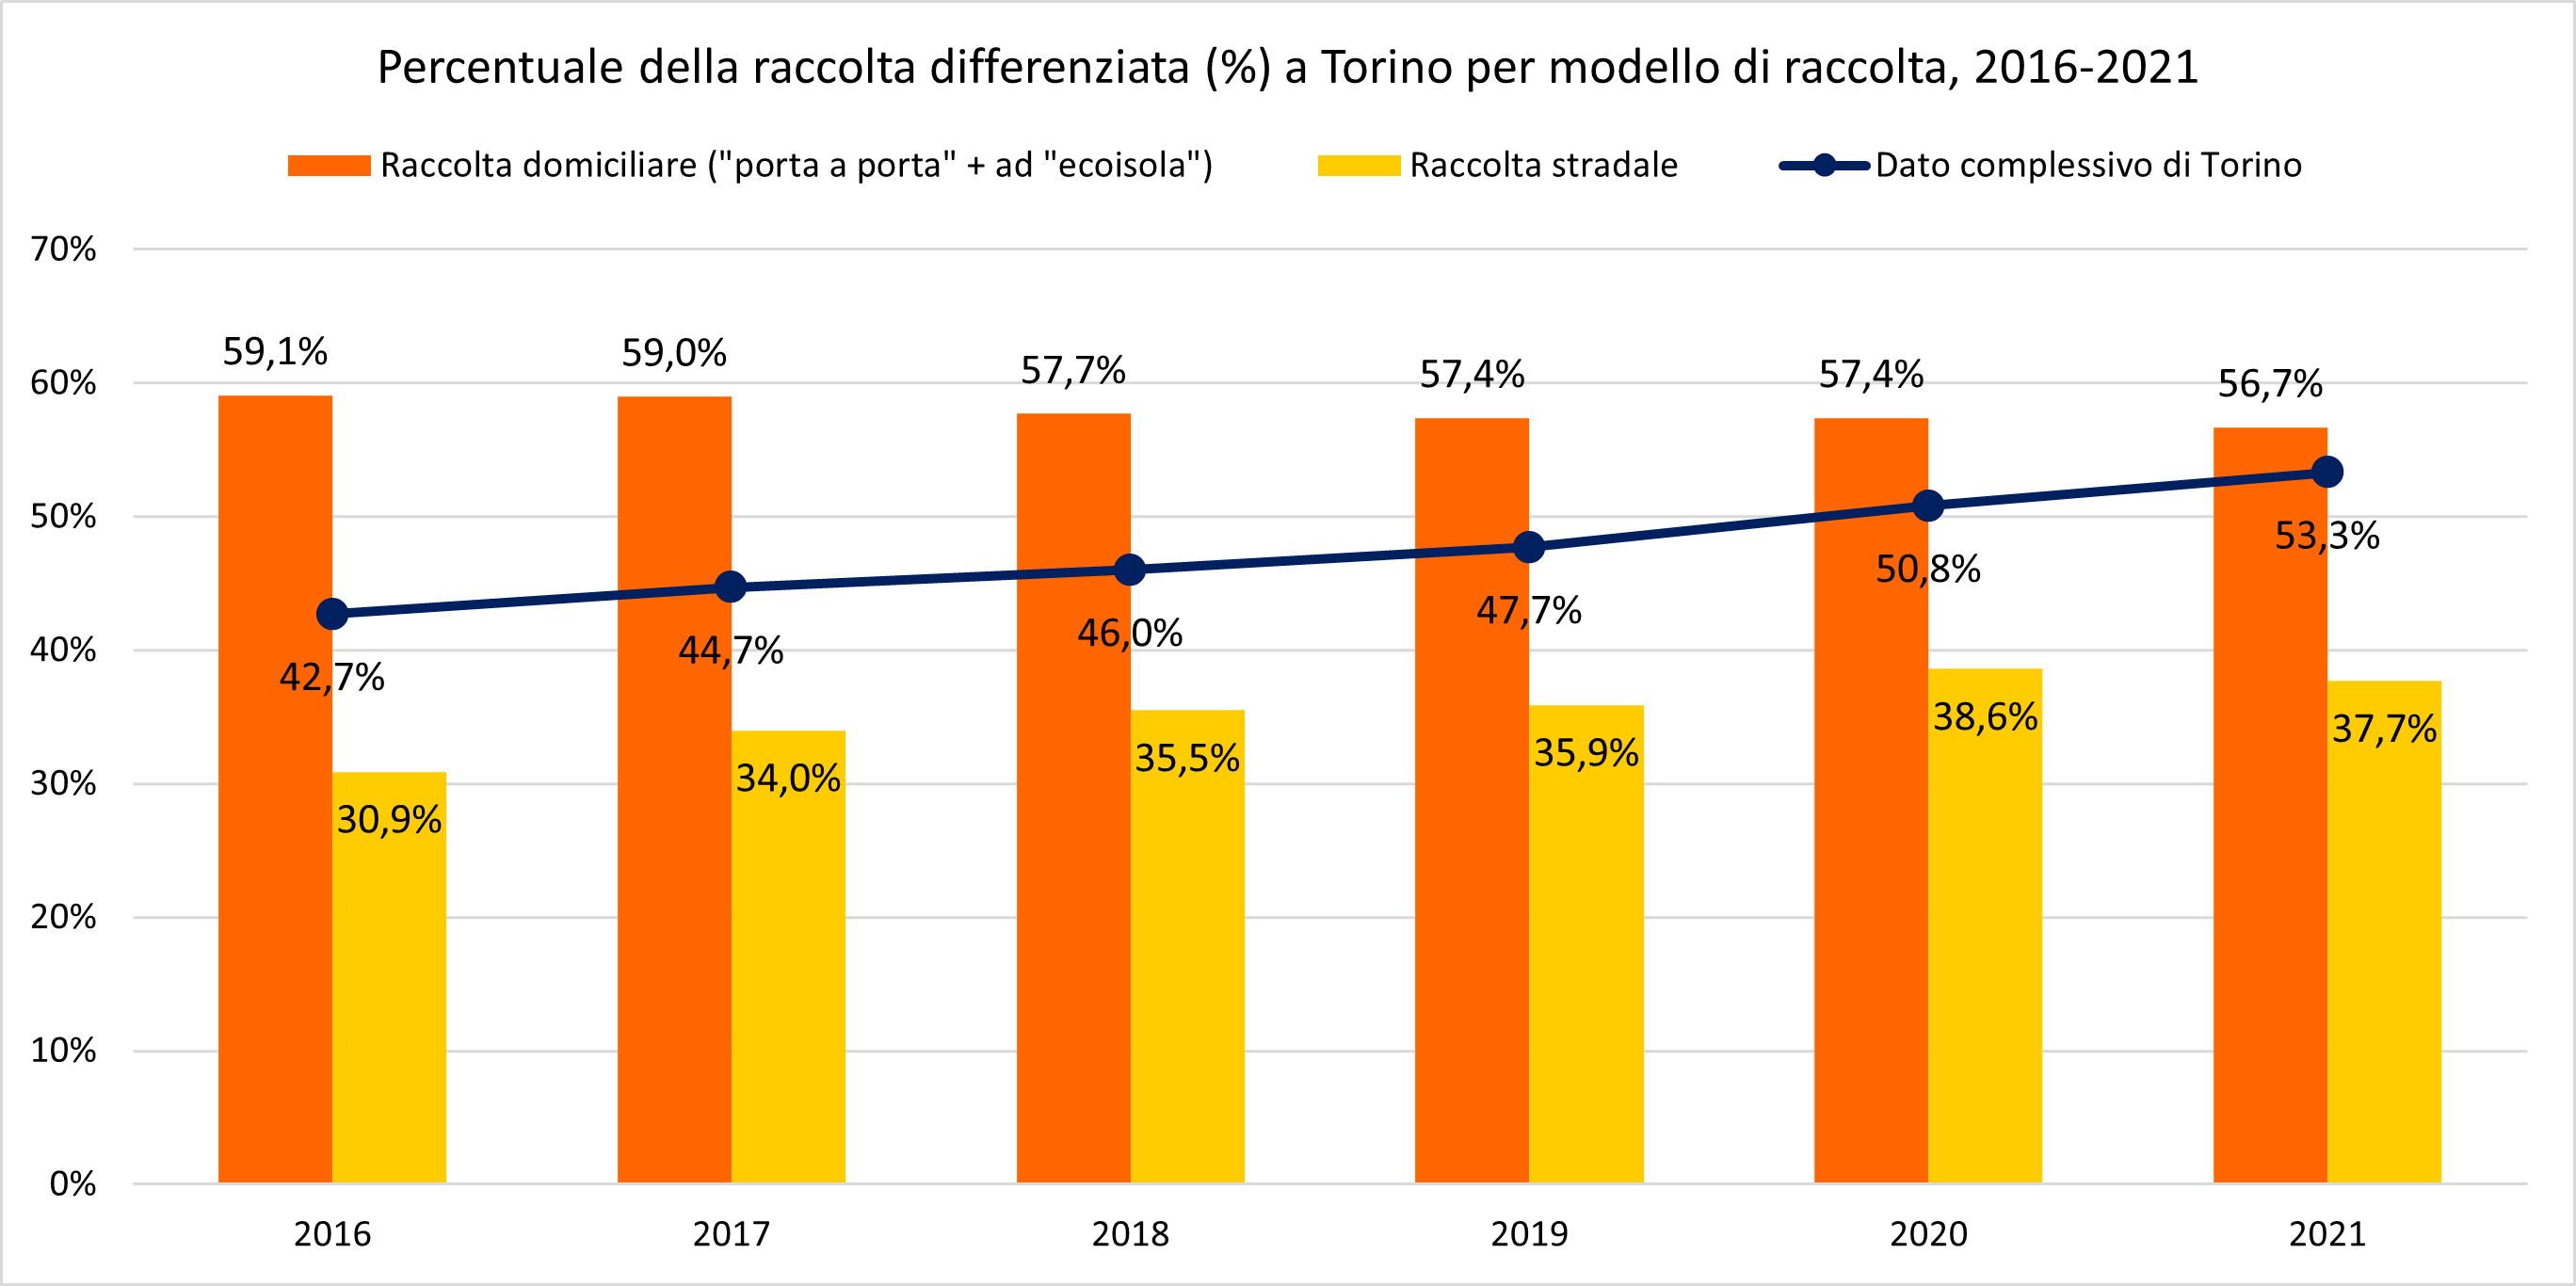 Percentuale della raccolta differenziata a Torino